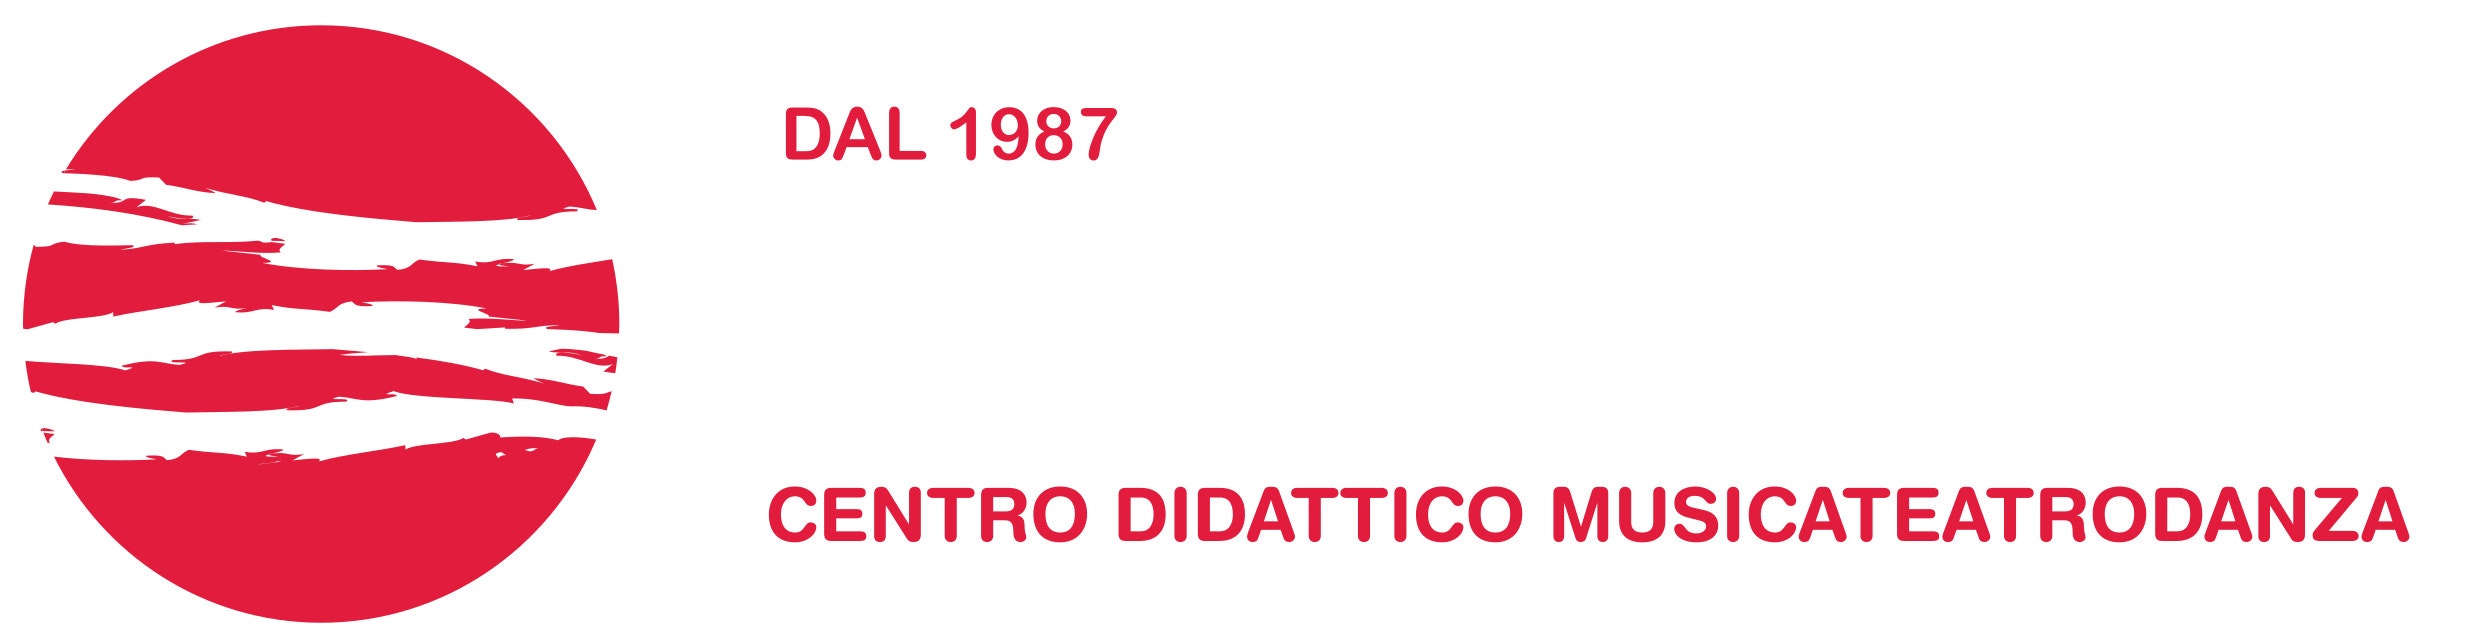 Logo Cdm - Centro didattico musicateatrodanza